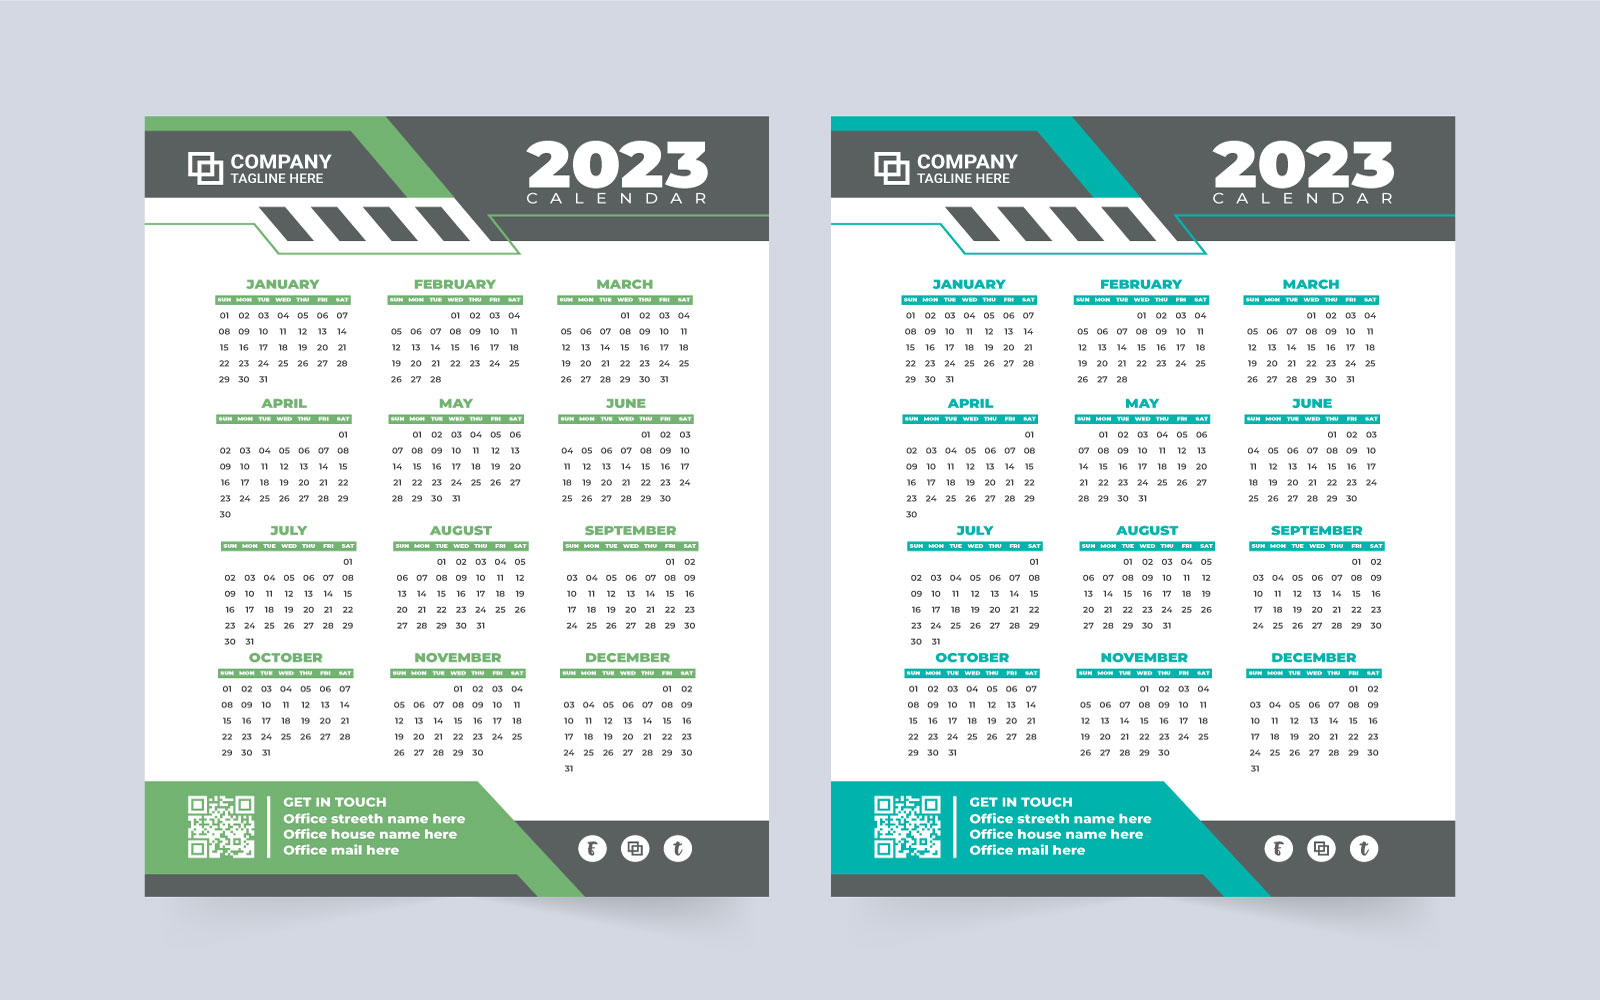 calendar-2023-template-free-powerpoint-get-calendar-2023-update-www